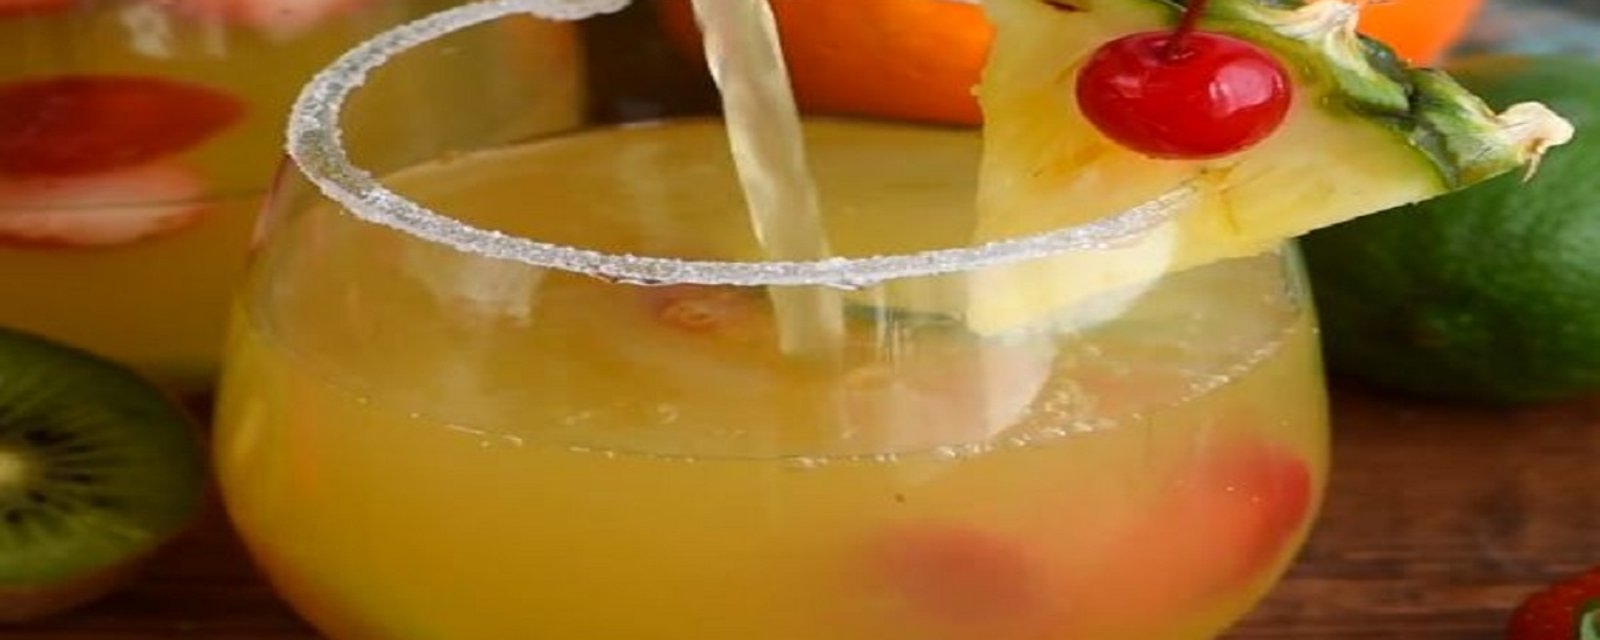 Margarita-sangria à base de vin blanc aromatisé à l’ananas